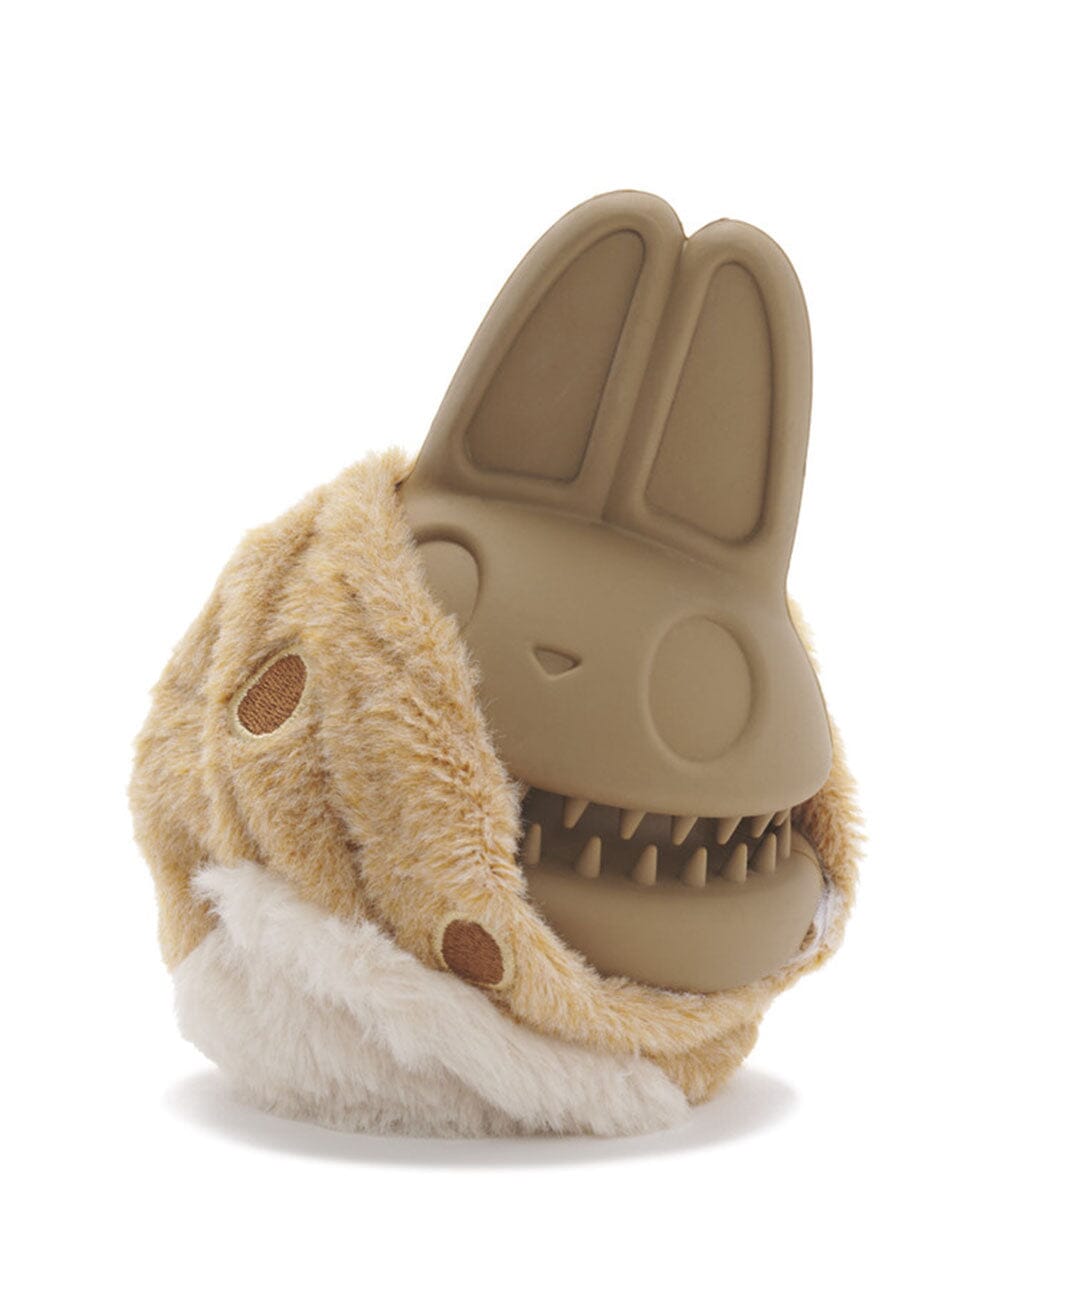 burnishedhaus's Buff Bunny Dupe Product Set on LTK